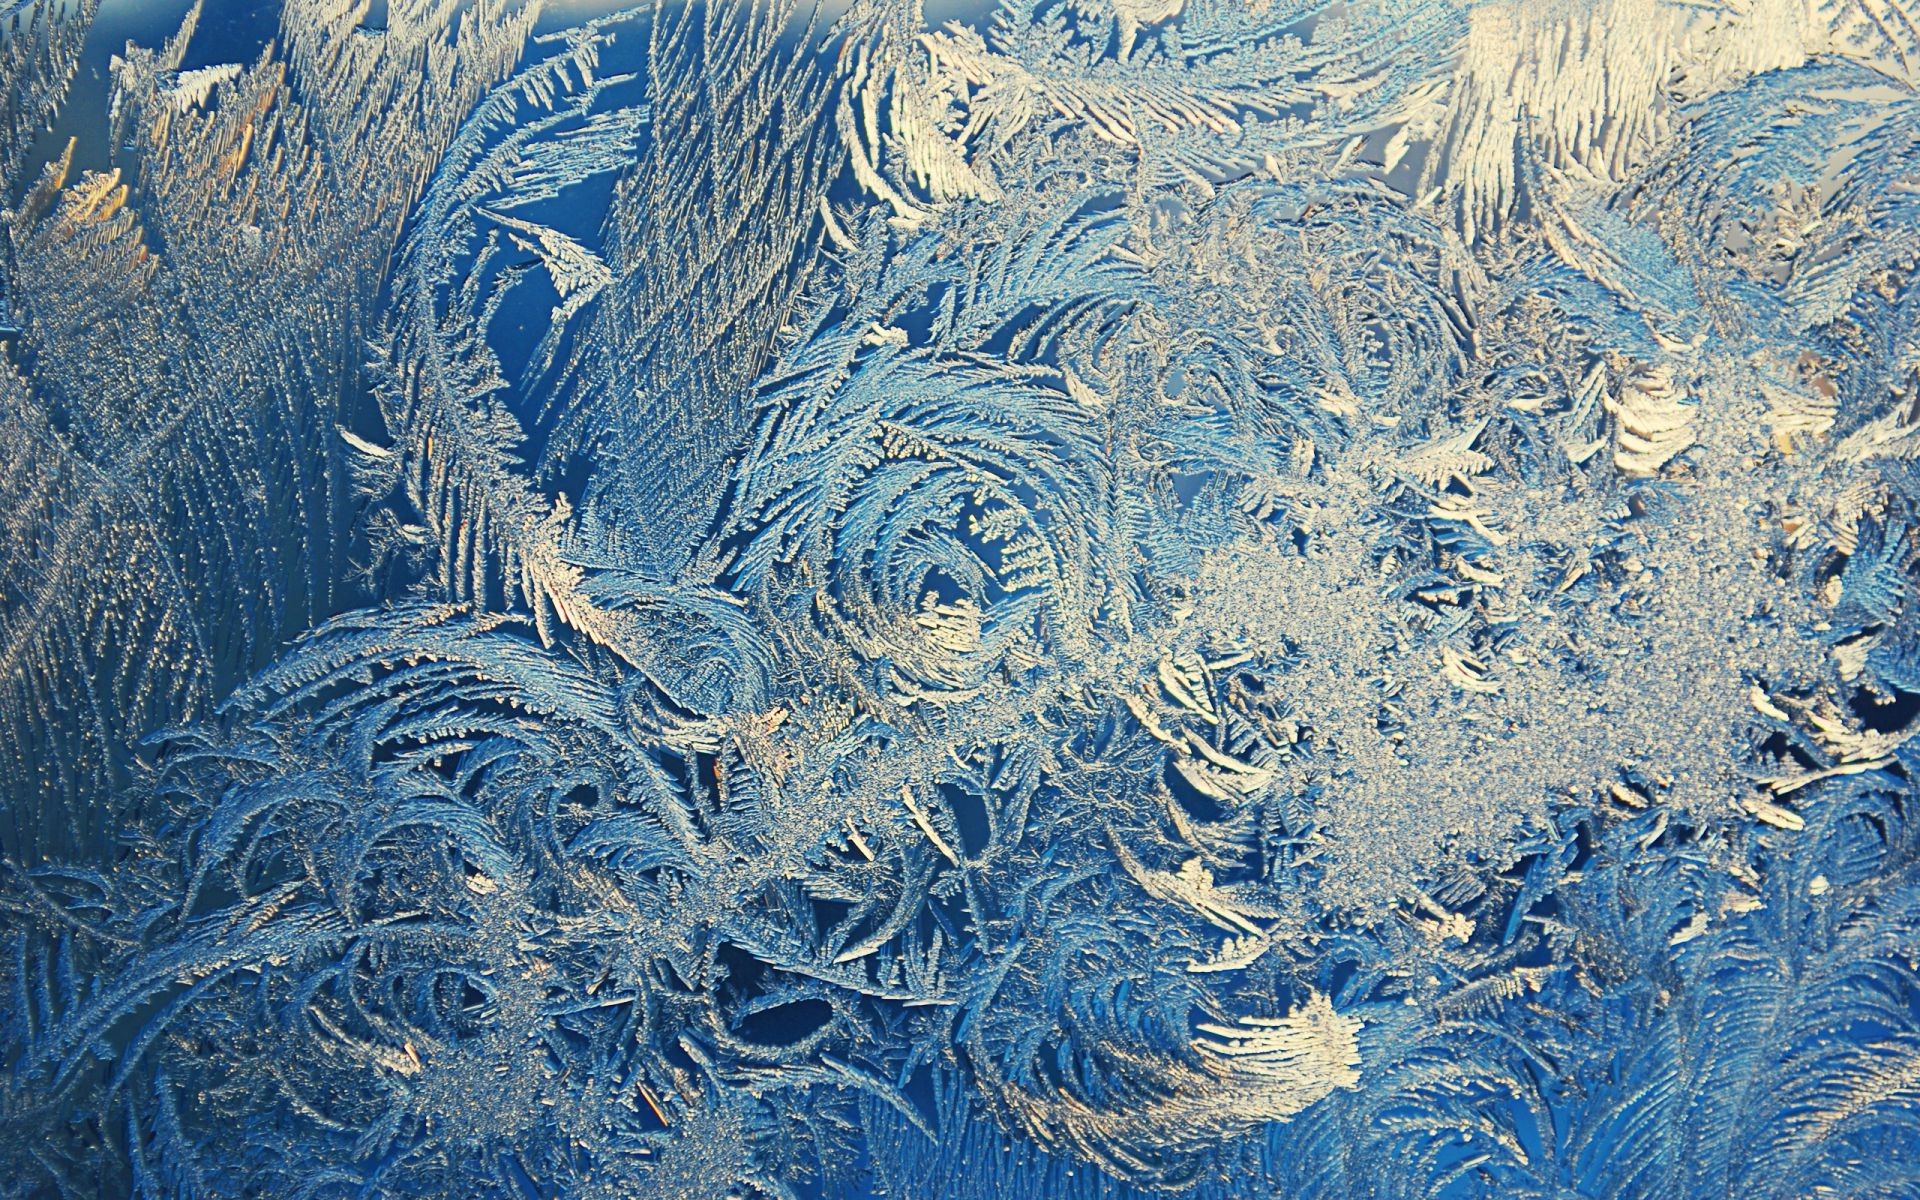 стекло мороз холодная природа снег лед зима ледяной рабочего стола морозный шаблон замороженные аннотация текстура цвет кристалл